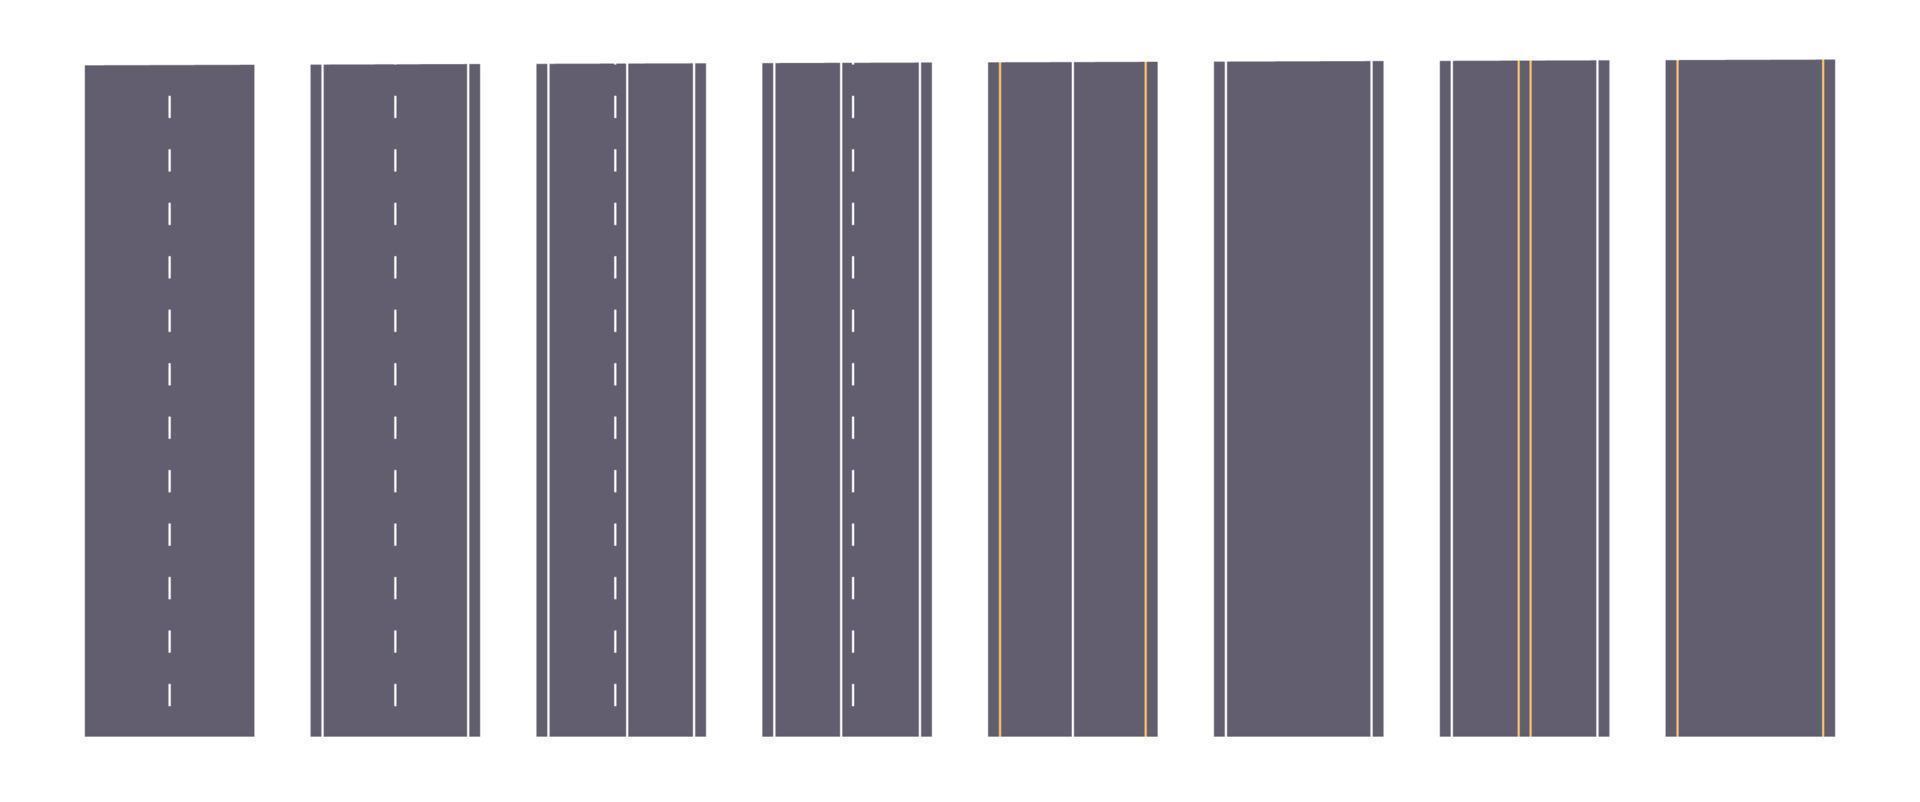 estradas de asfalto com linhas pontilhadas ou sólidas e marcações de estrada conceito vertical ilustração vetorial plana. vetor